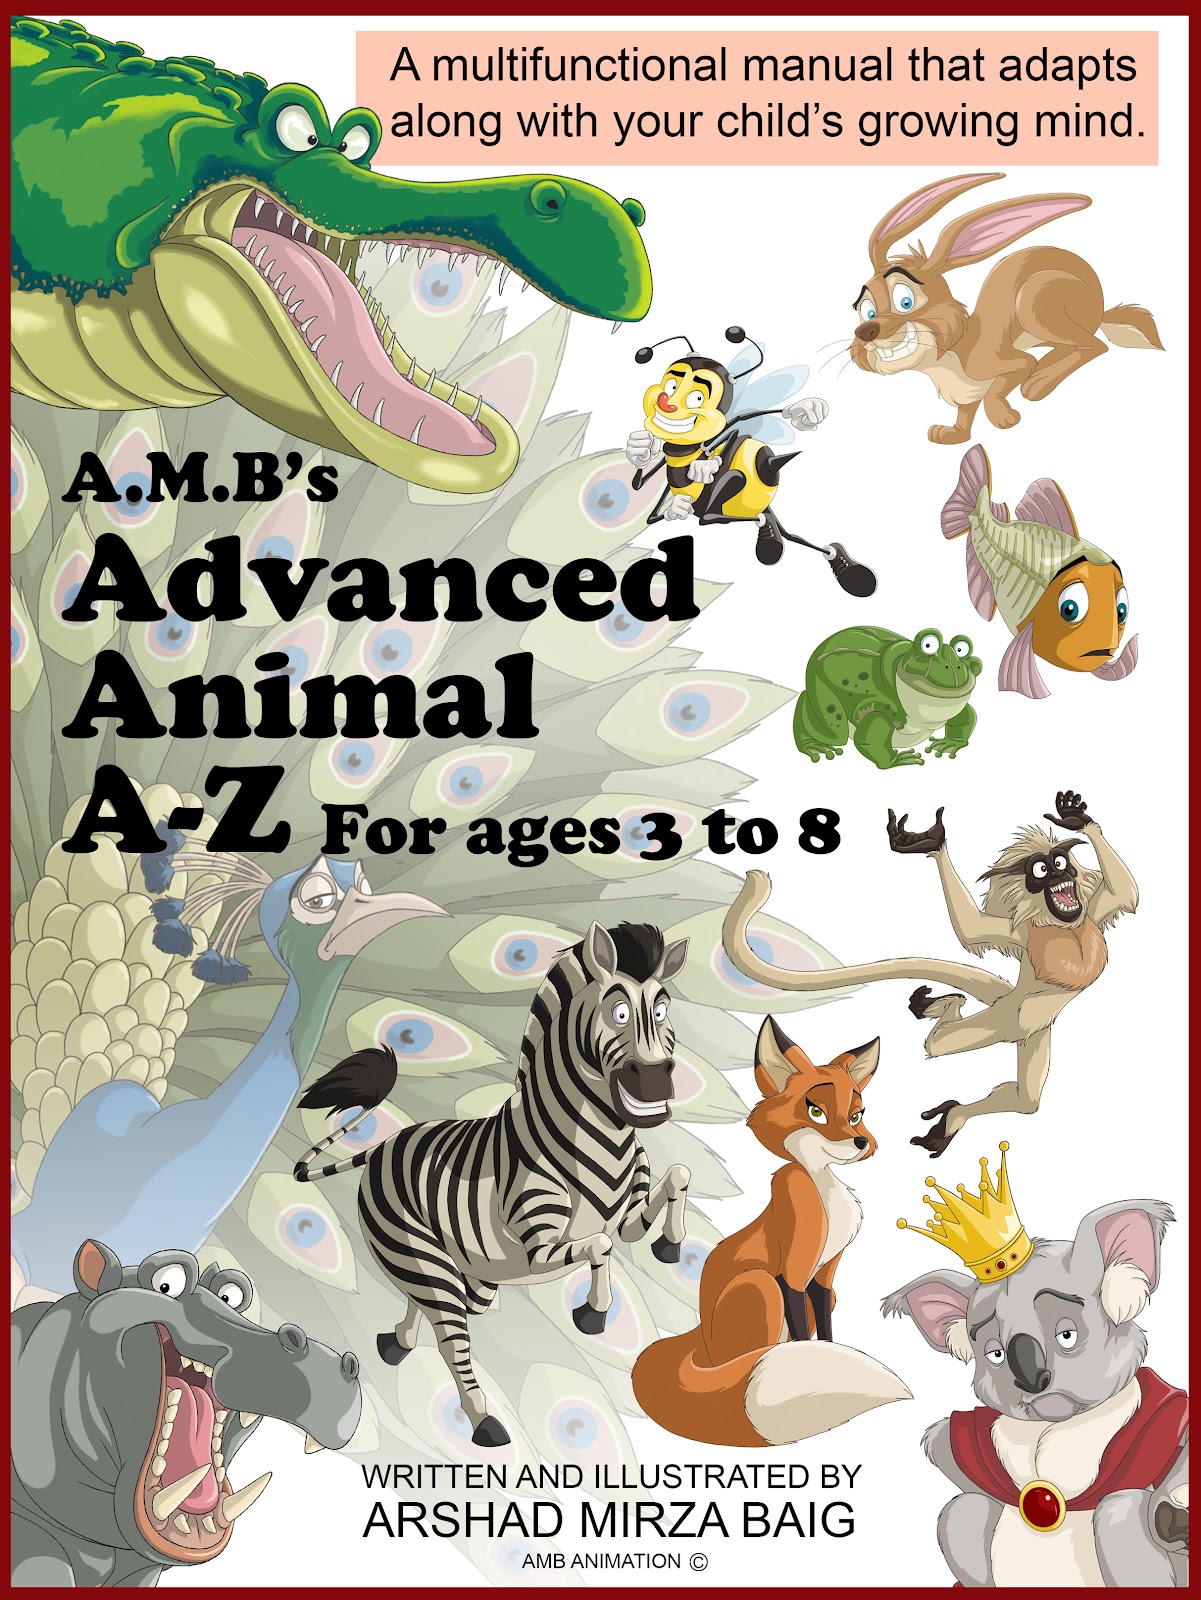 http://4.bp.blogspot.com/--4ccmSVSAZU/UEjV0NxIrXI/AAAAAAAABFM/KGlIP7QXBkU/s1600/Animal_Alphabet_A_Z_front_cover.jpg